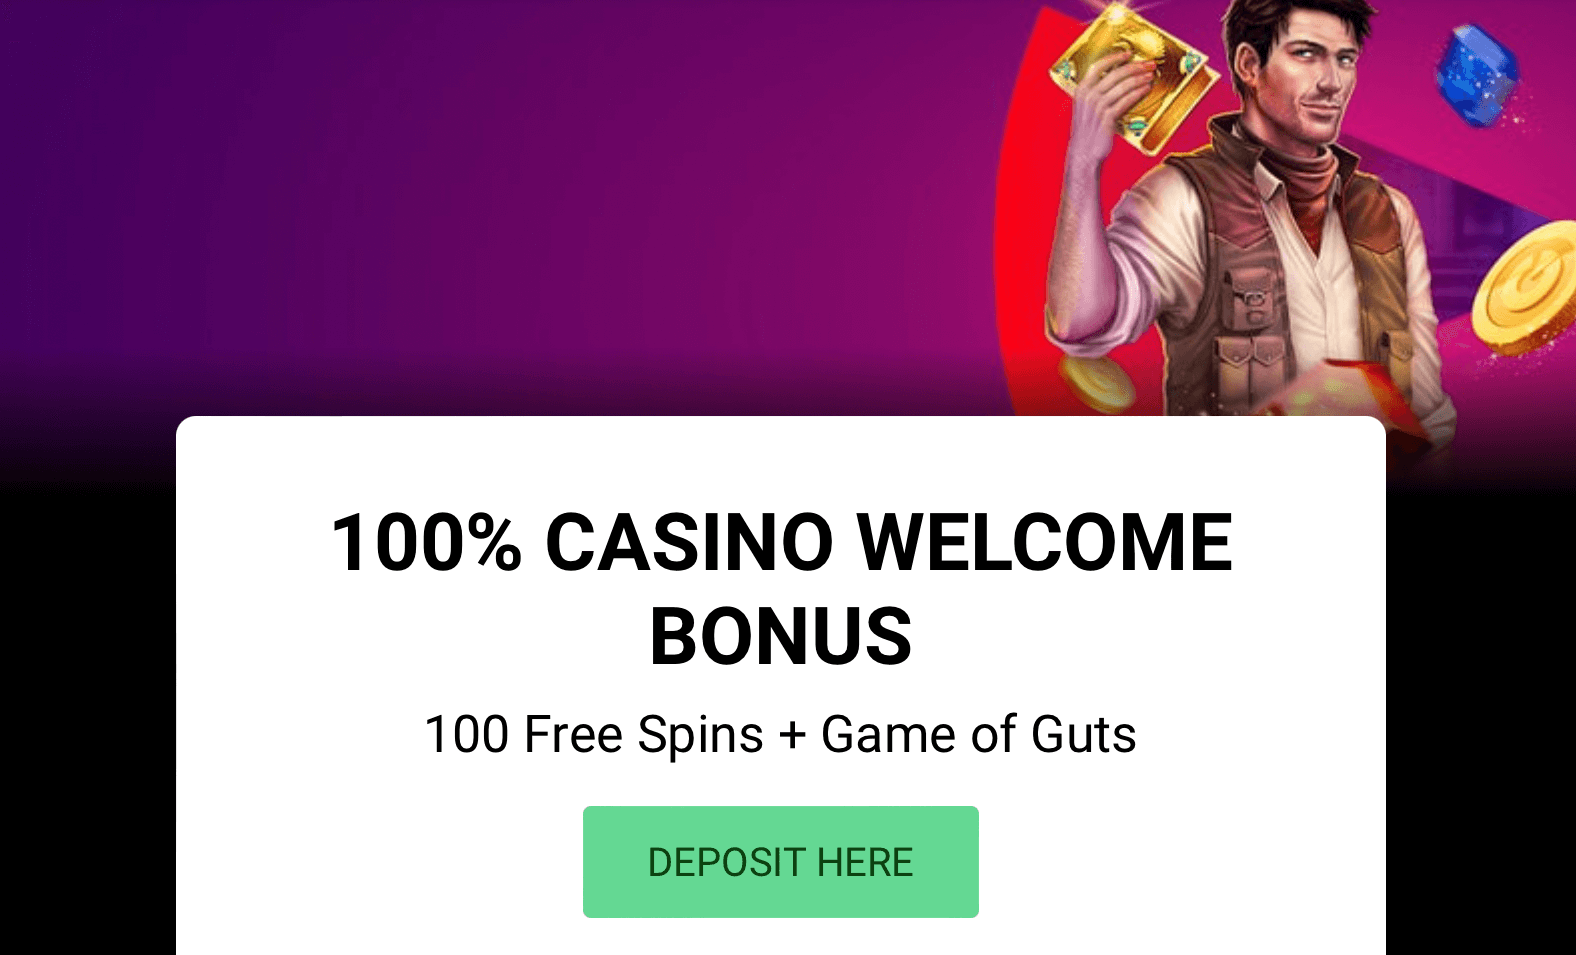 guts casino